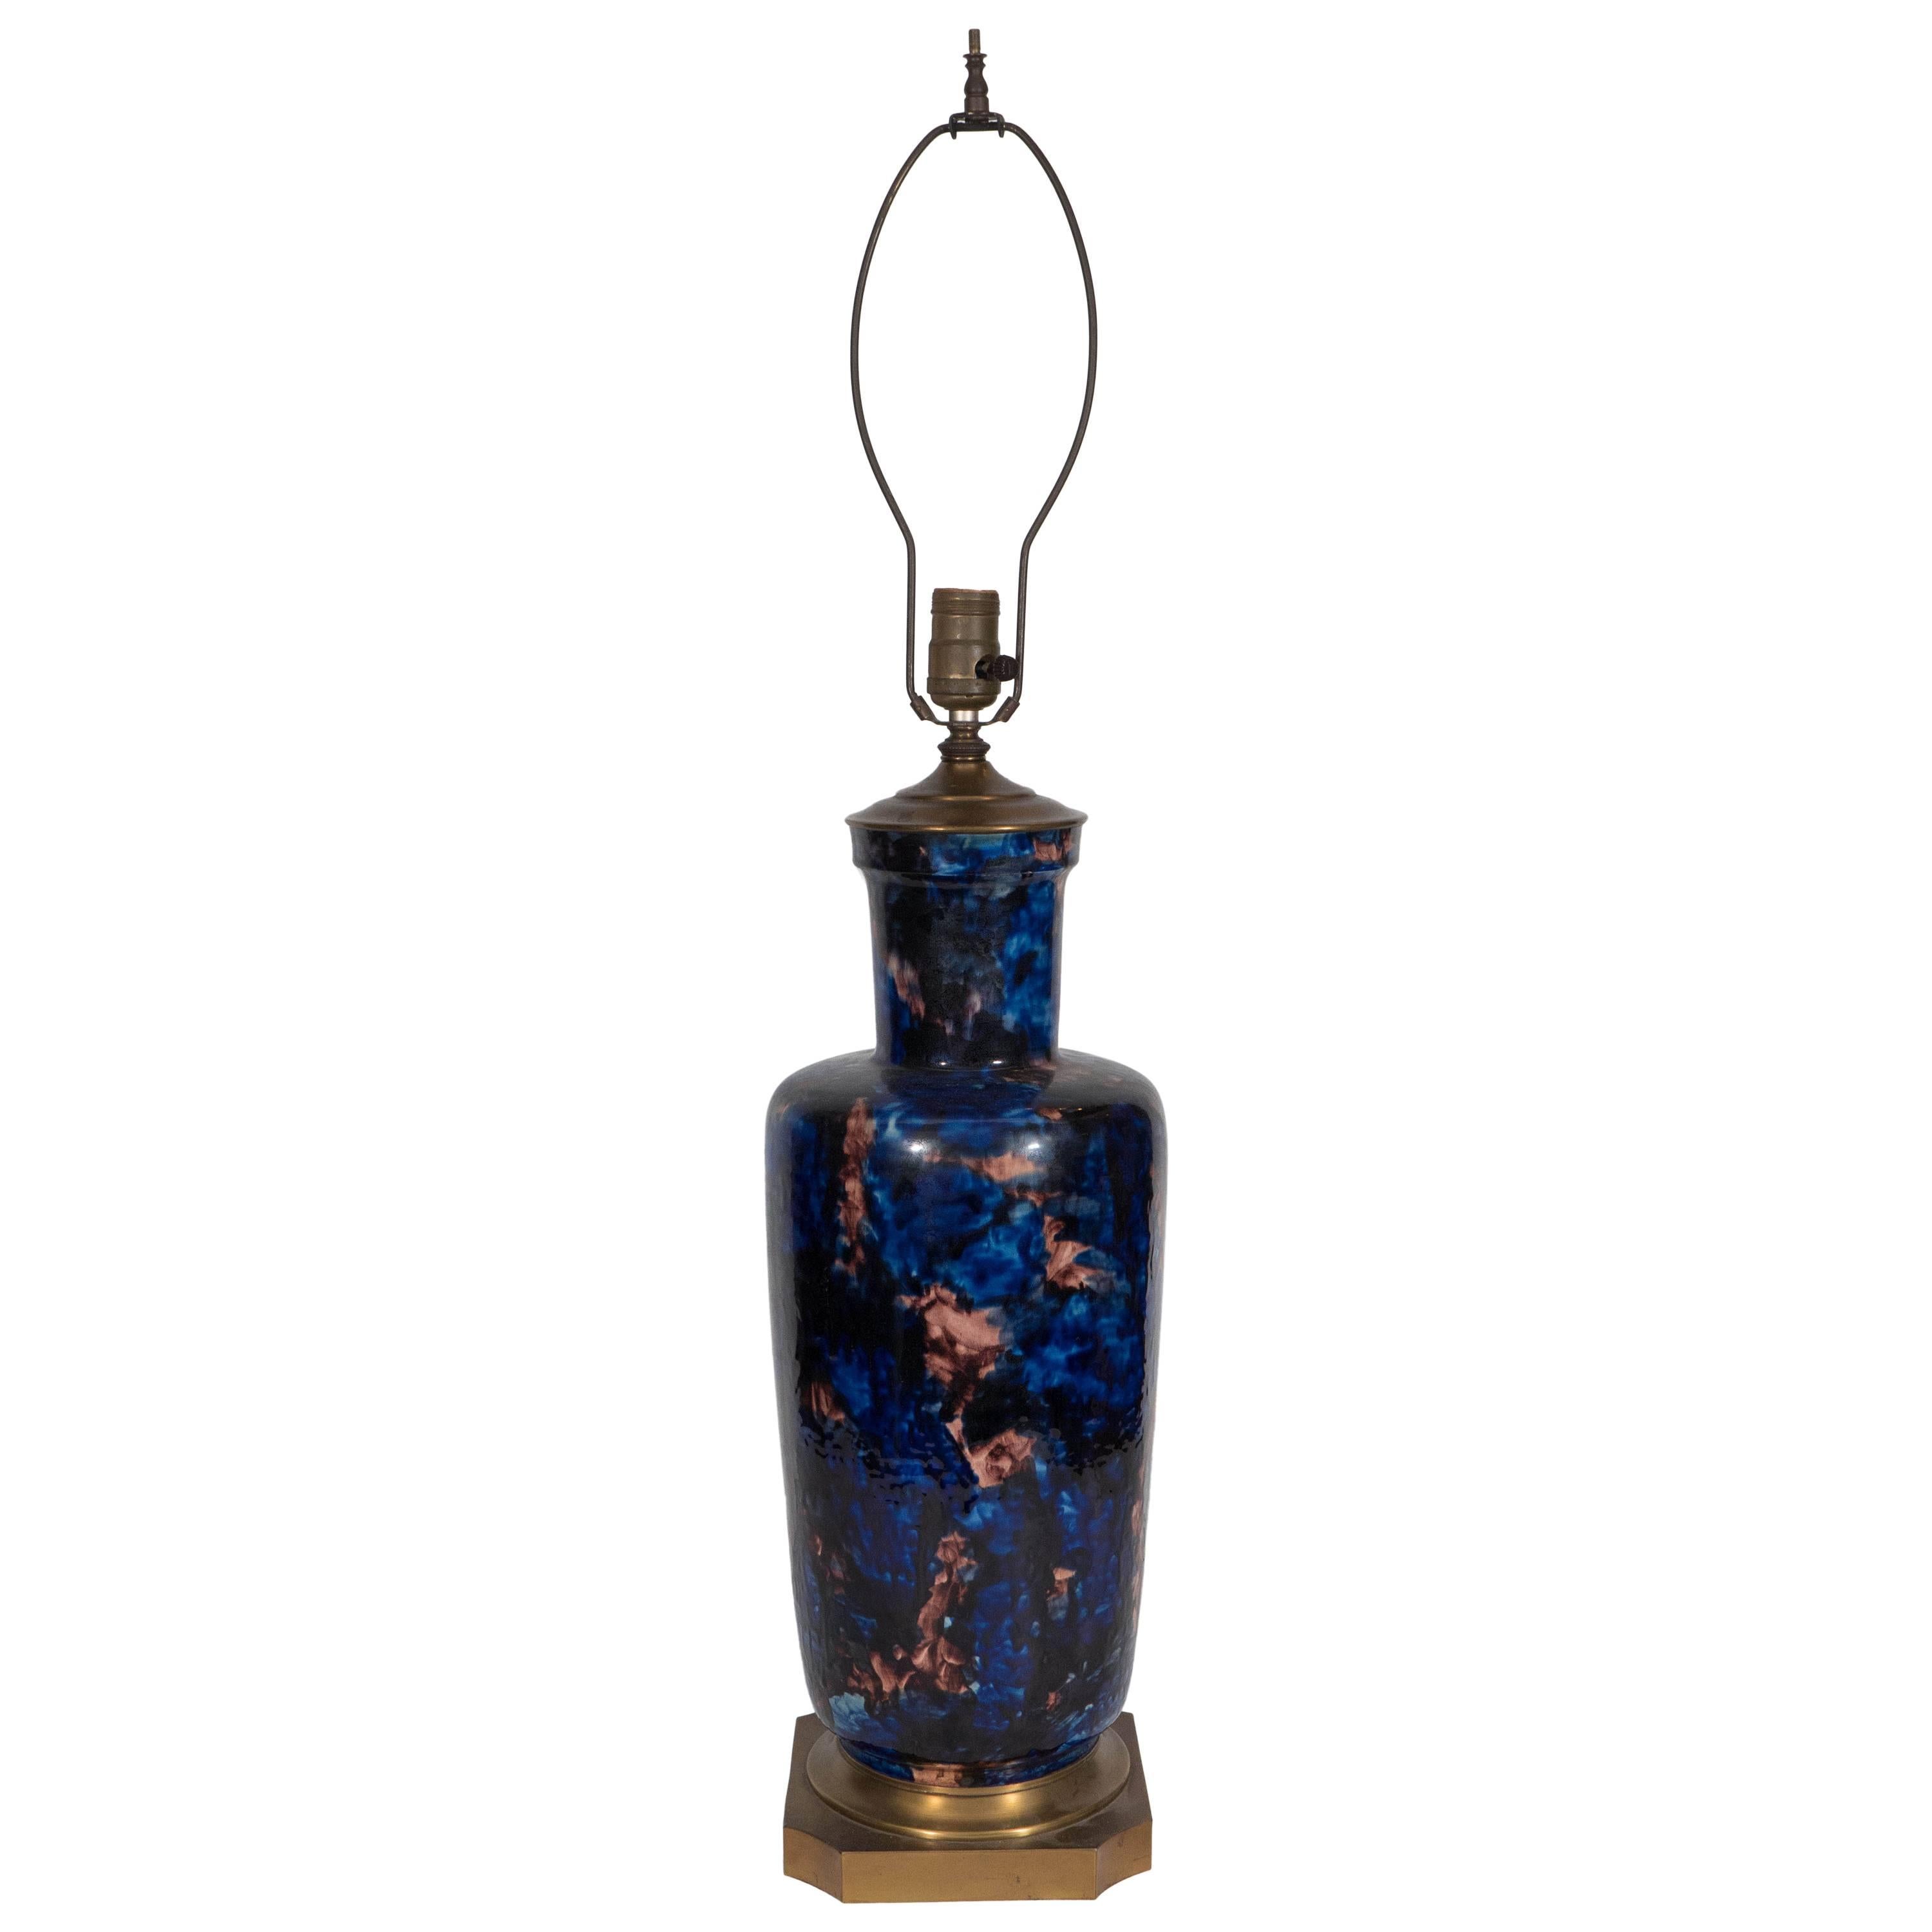 Midcentury Hand-Painted Ceramic Vase Lamp in Cobalt and Mauve